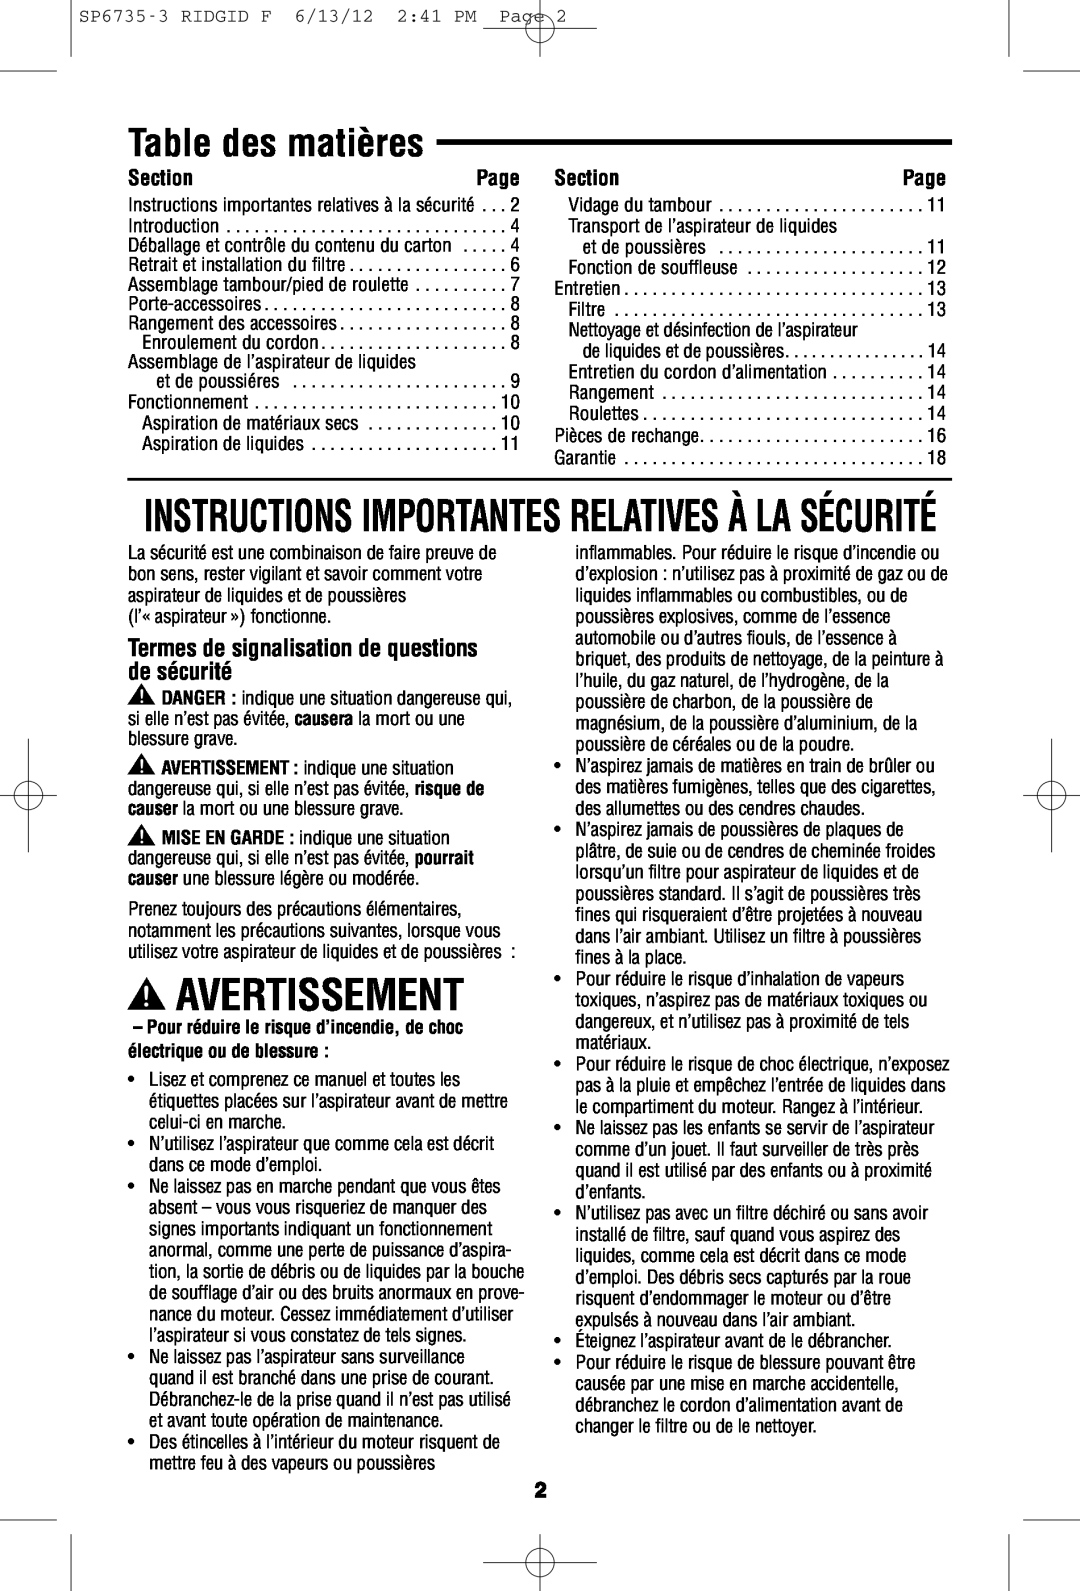 RIDGID WD14500 owner manual Avertissement, Table des matières, Instructions Importantes Relatives À La Sécurité, Page 